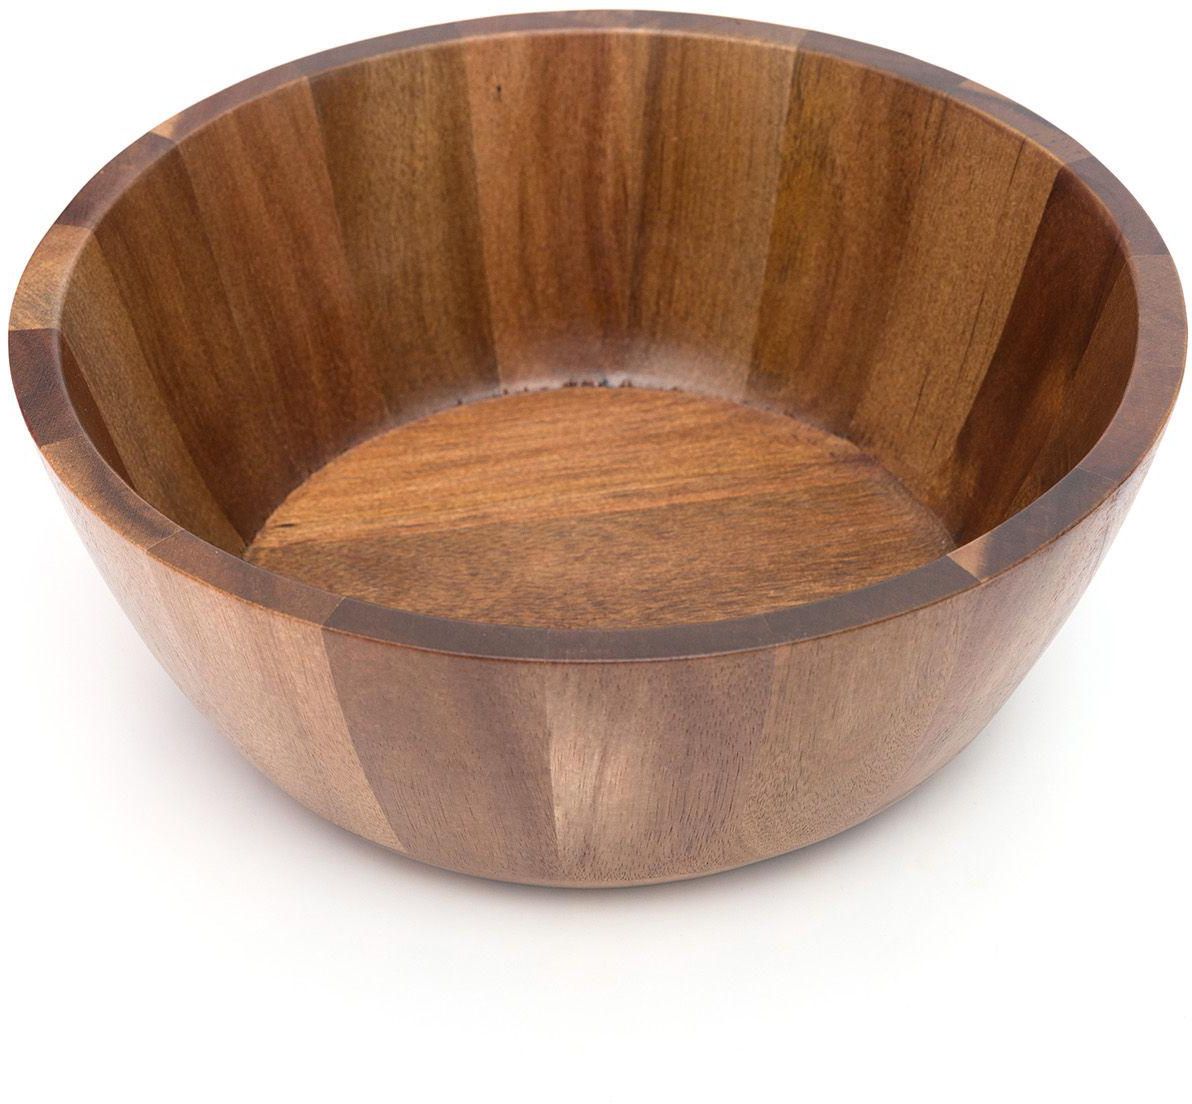 وعاء سلطة مصنوعة من خشب الأكاسيا بجودة ممتازة - وعاء خشبي - لون بني داكن